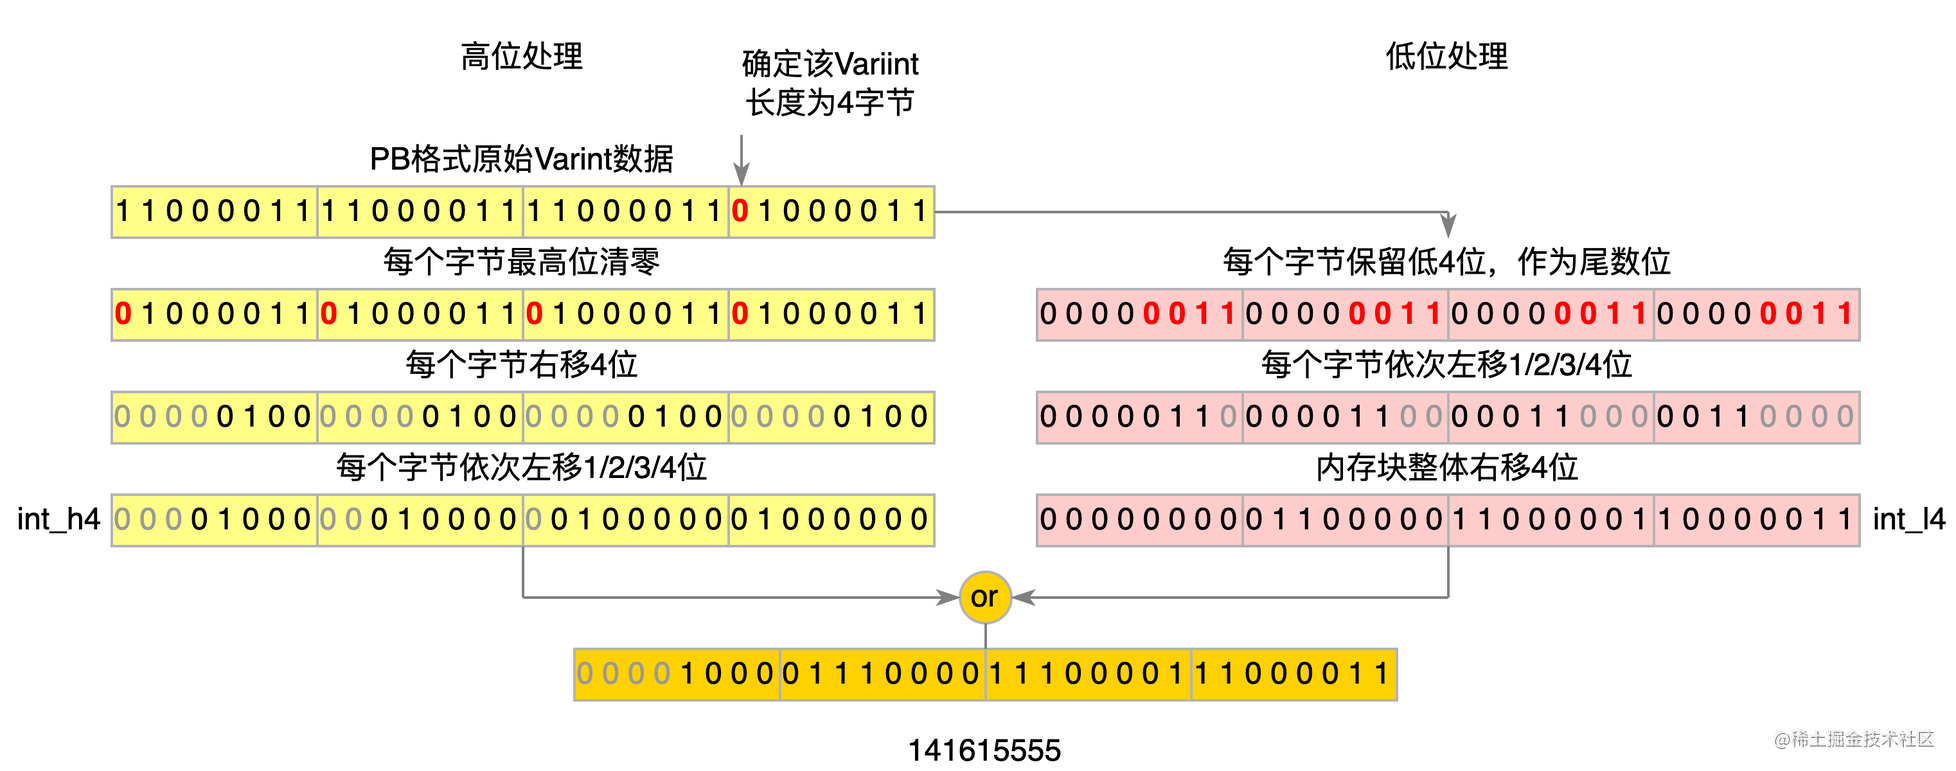 图7 ProtoBuf Varint解析优化后流程图